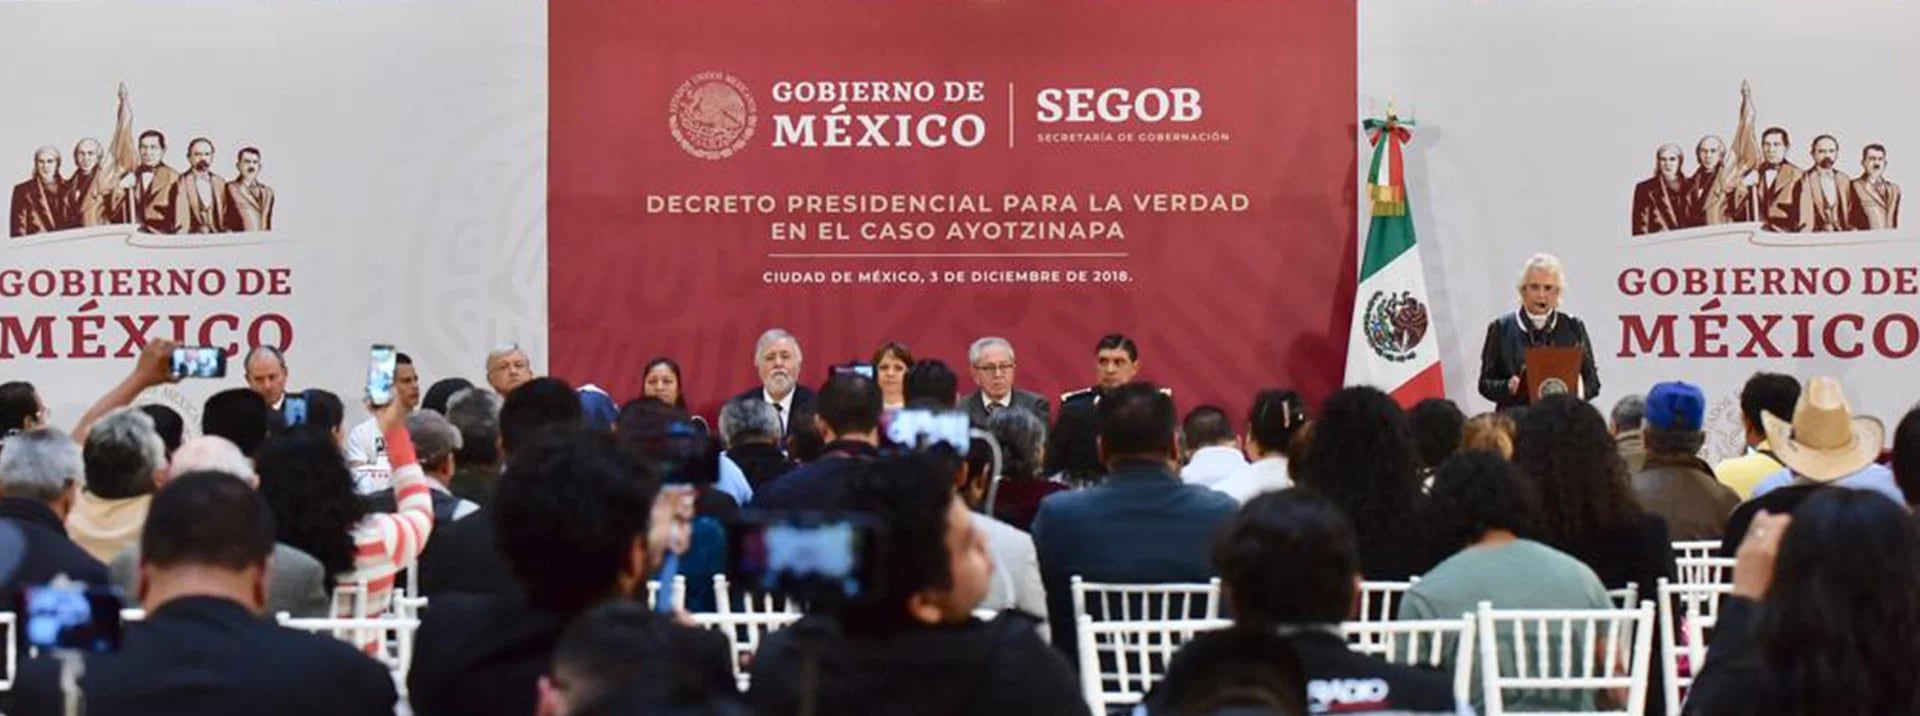 El decreto entrará en vigor un día después de su publicación en el Diario Oficial de la Federación (Foto: Presidencia de México)